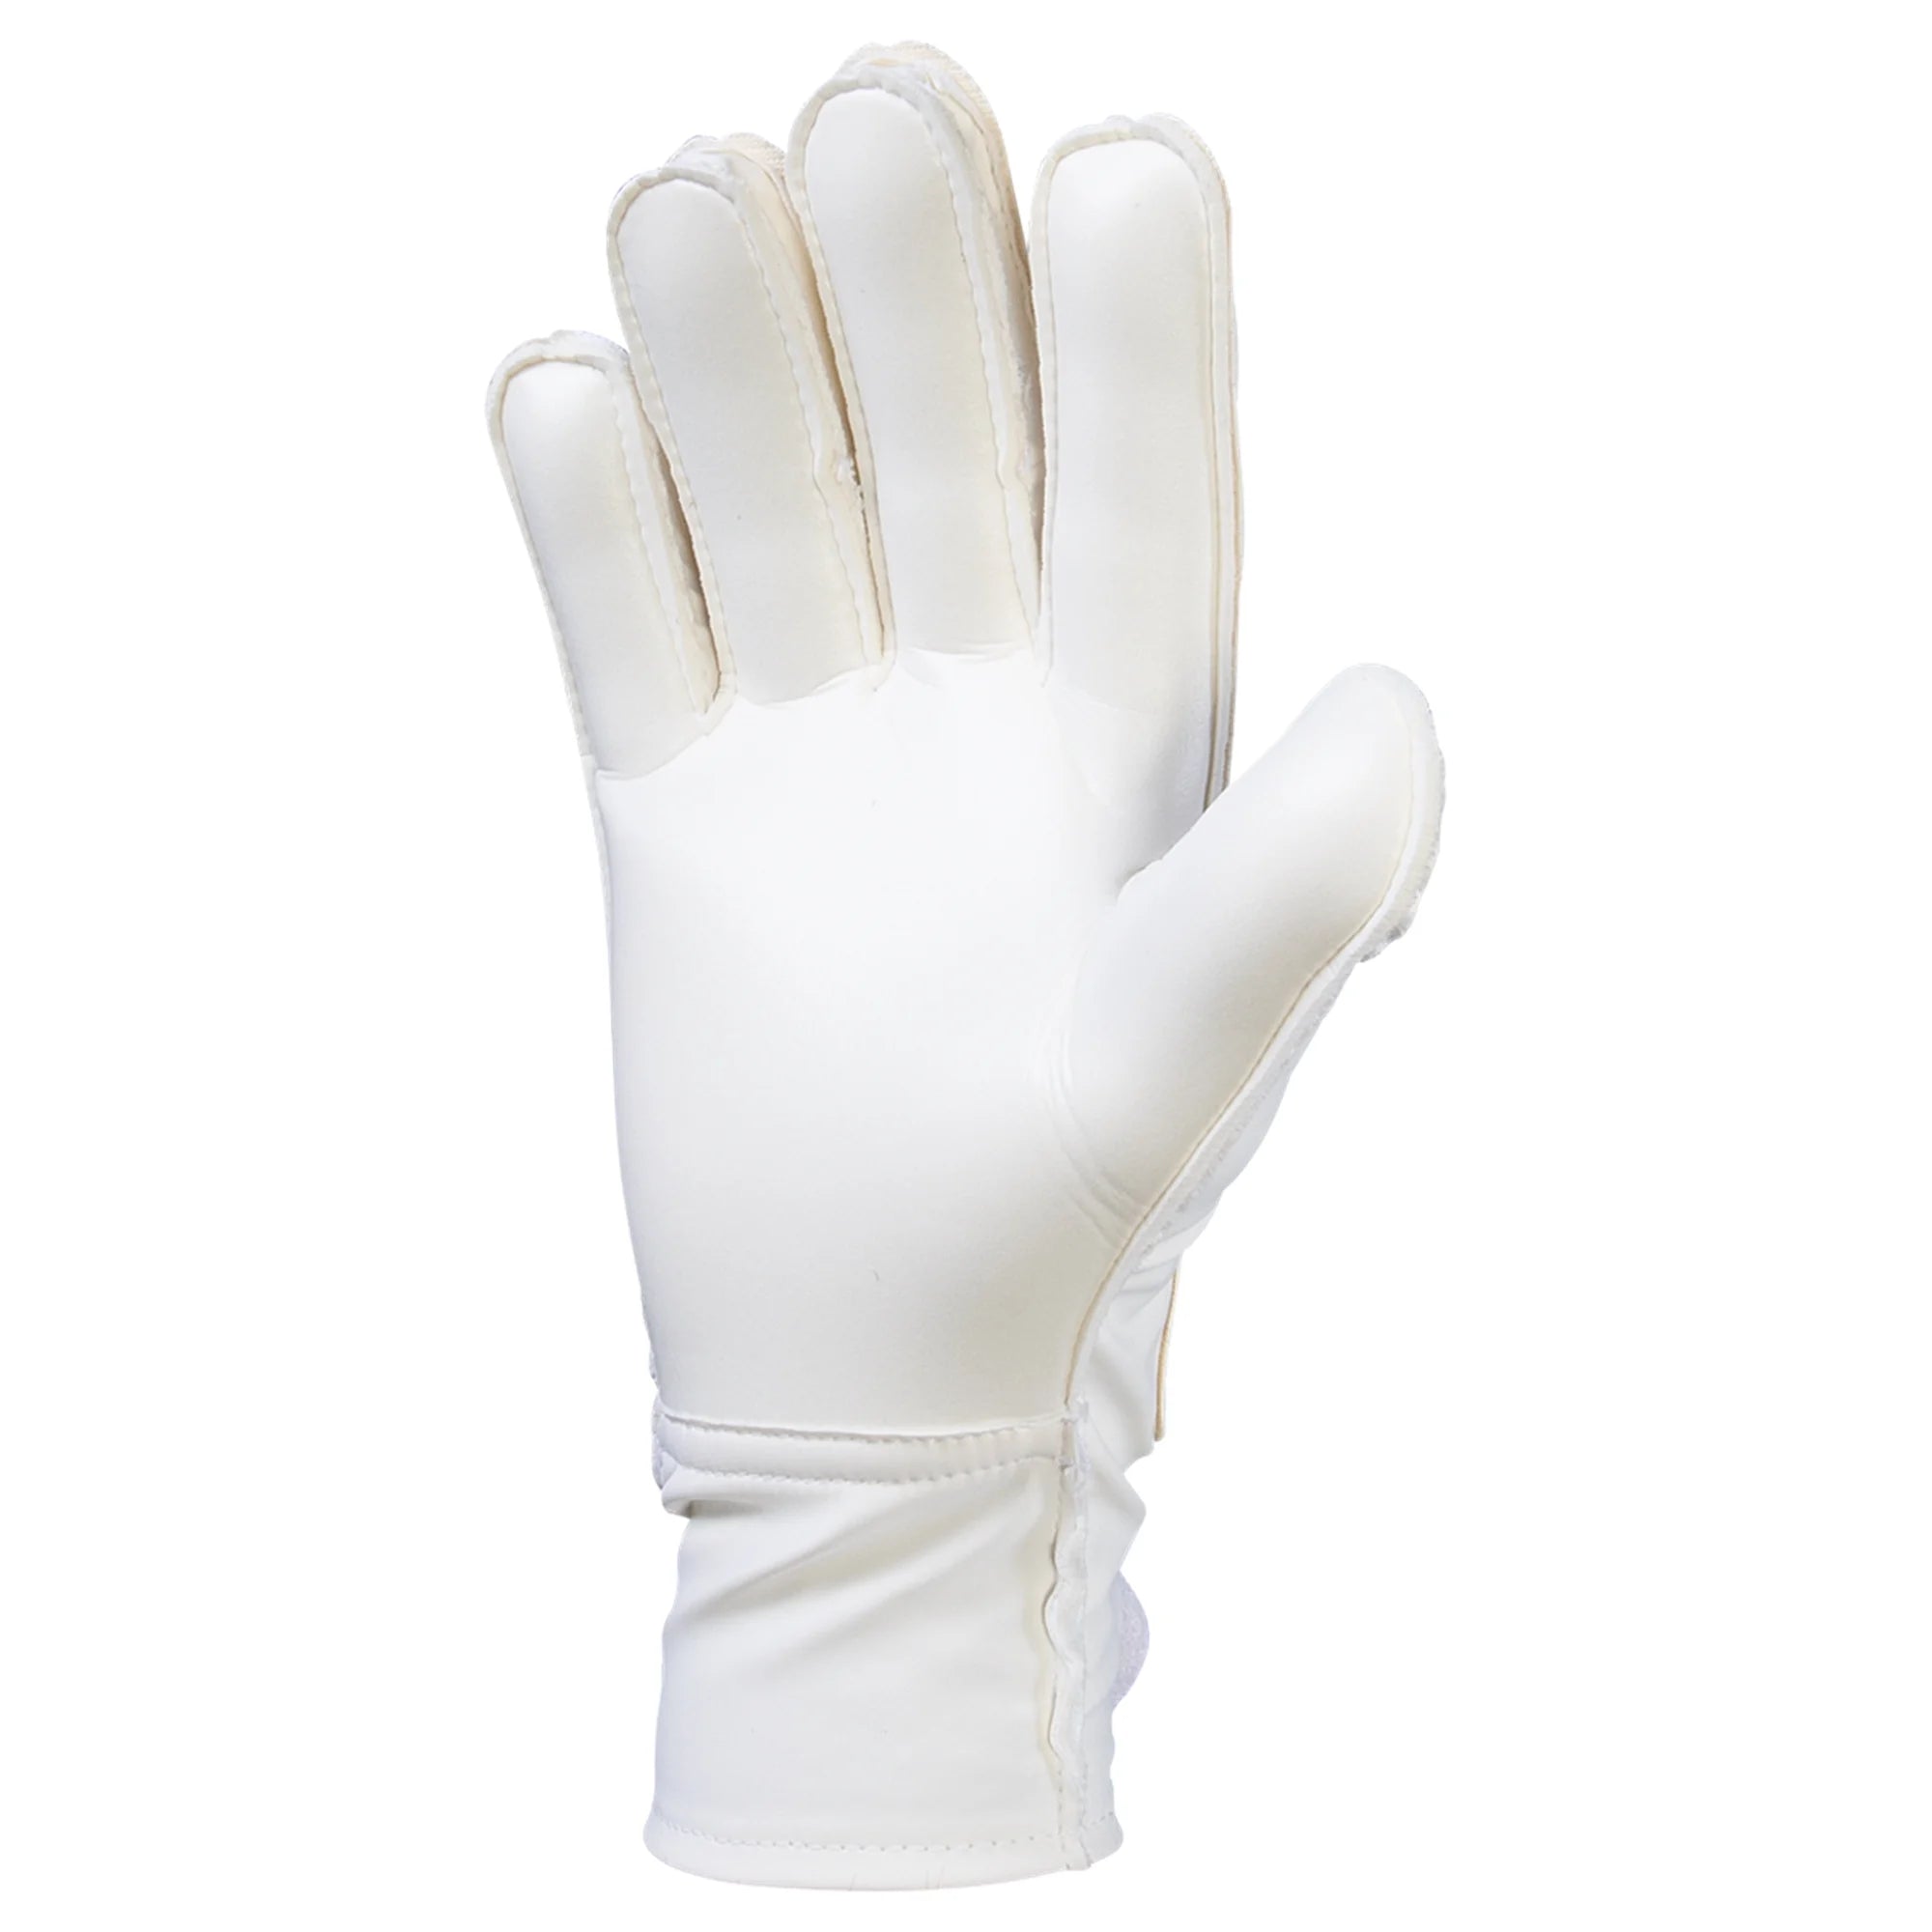 Adidas Copa GL Club GoalKepper Gloves